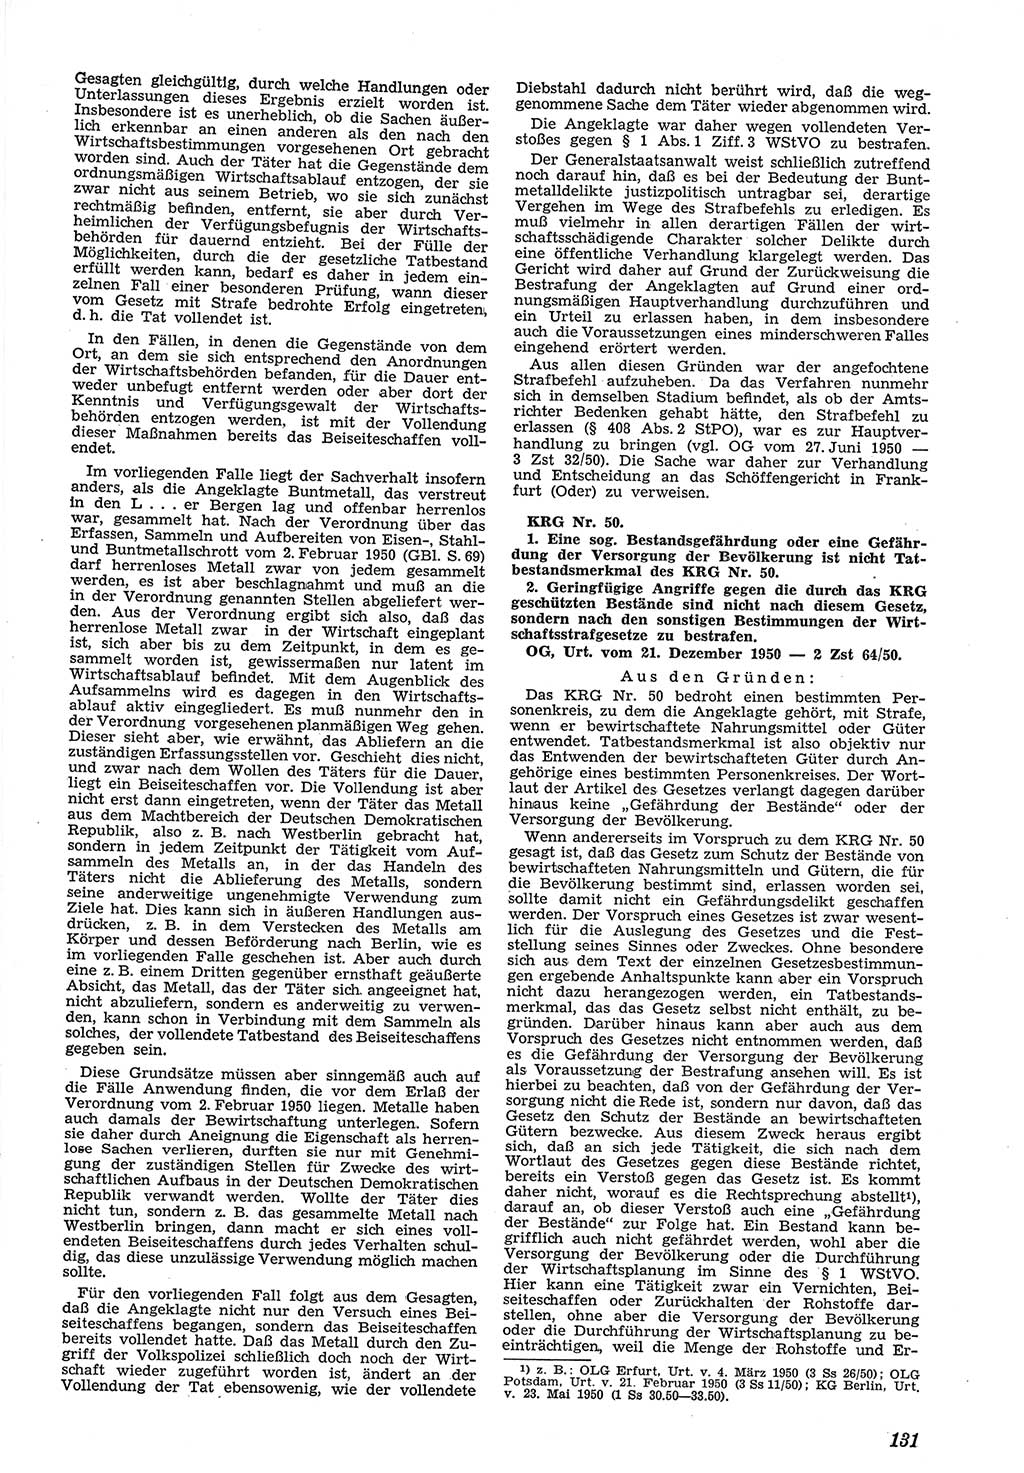 Neue Justiz (NJ), Zeitschrift für Recht und Rechtswissenschaft [Deutsche Demokratische Republik (DDR)], 5. Jahrgang 1951, Seite 131 (NJ DDR 1951, S. 131)